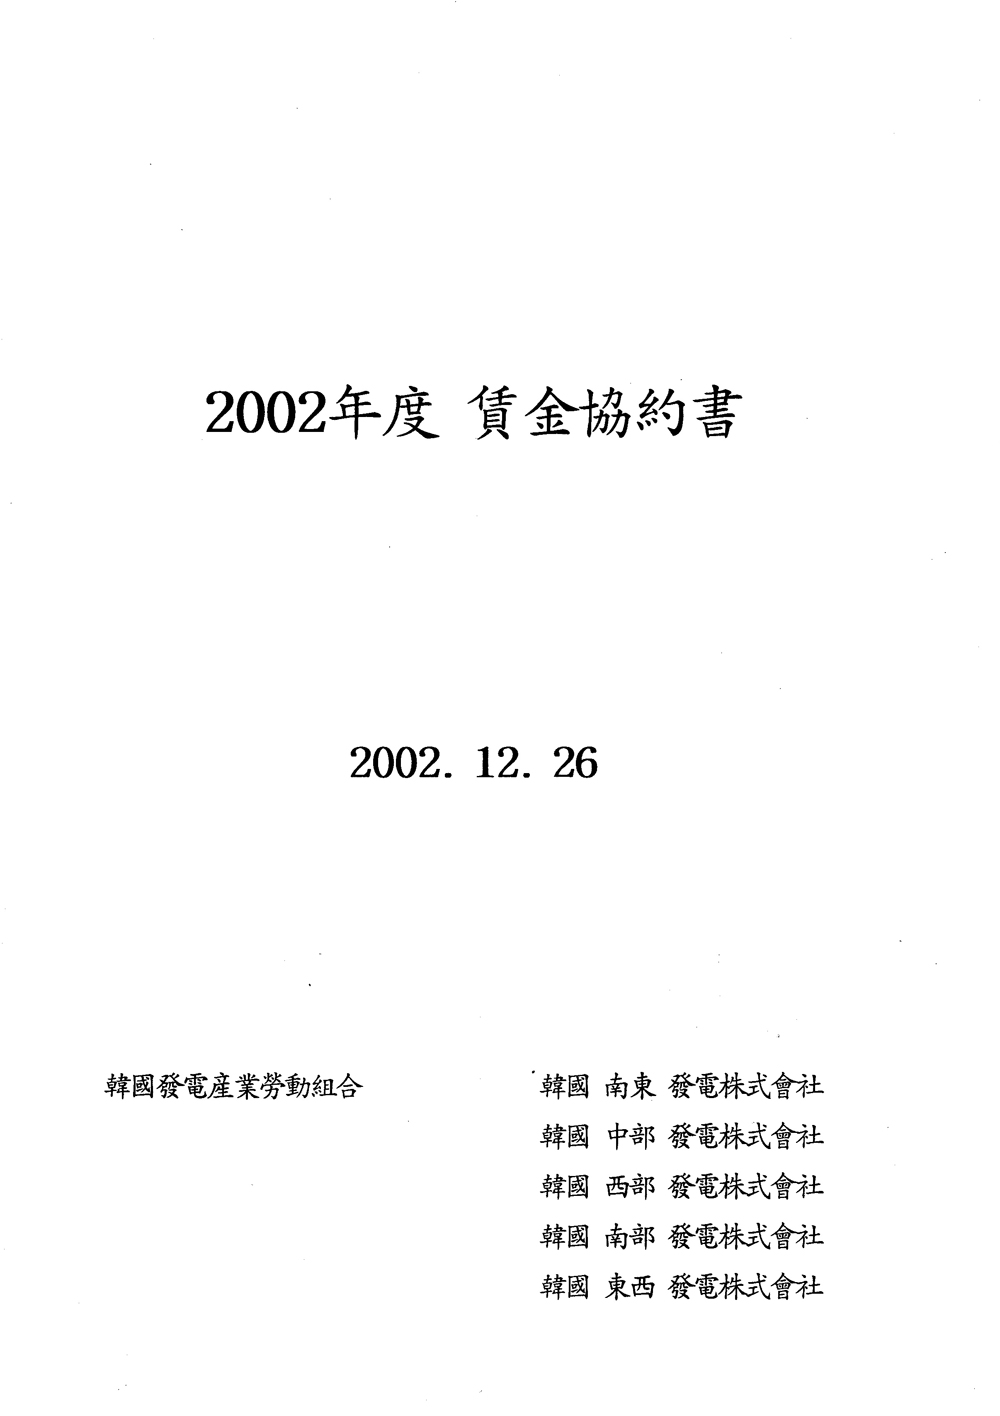 2002_1.jpg